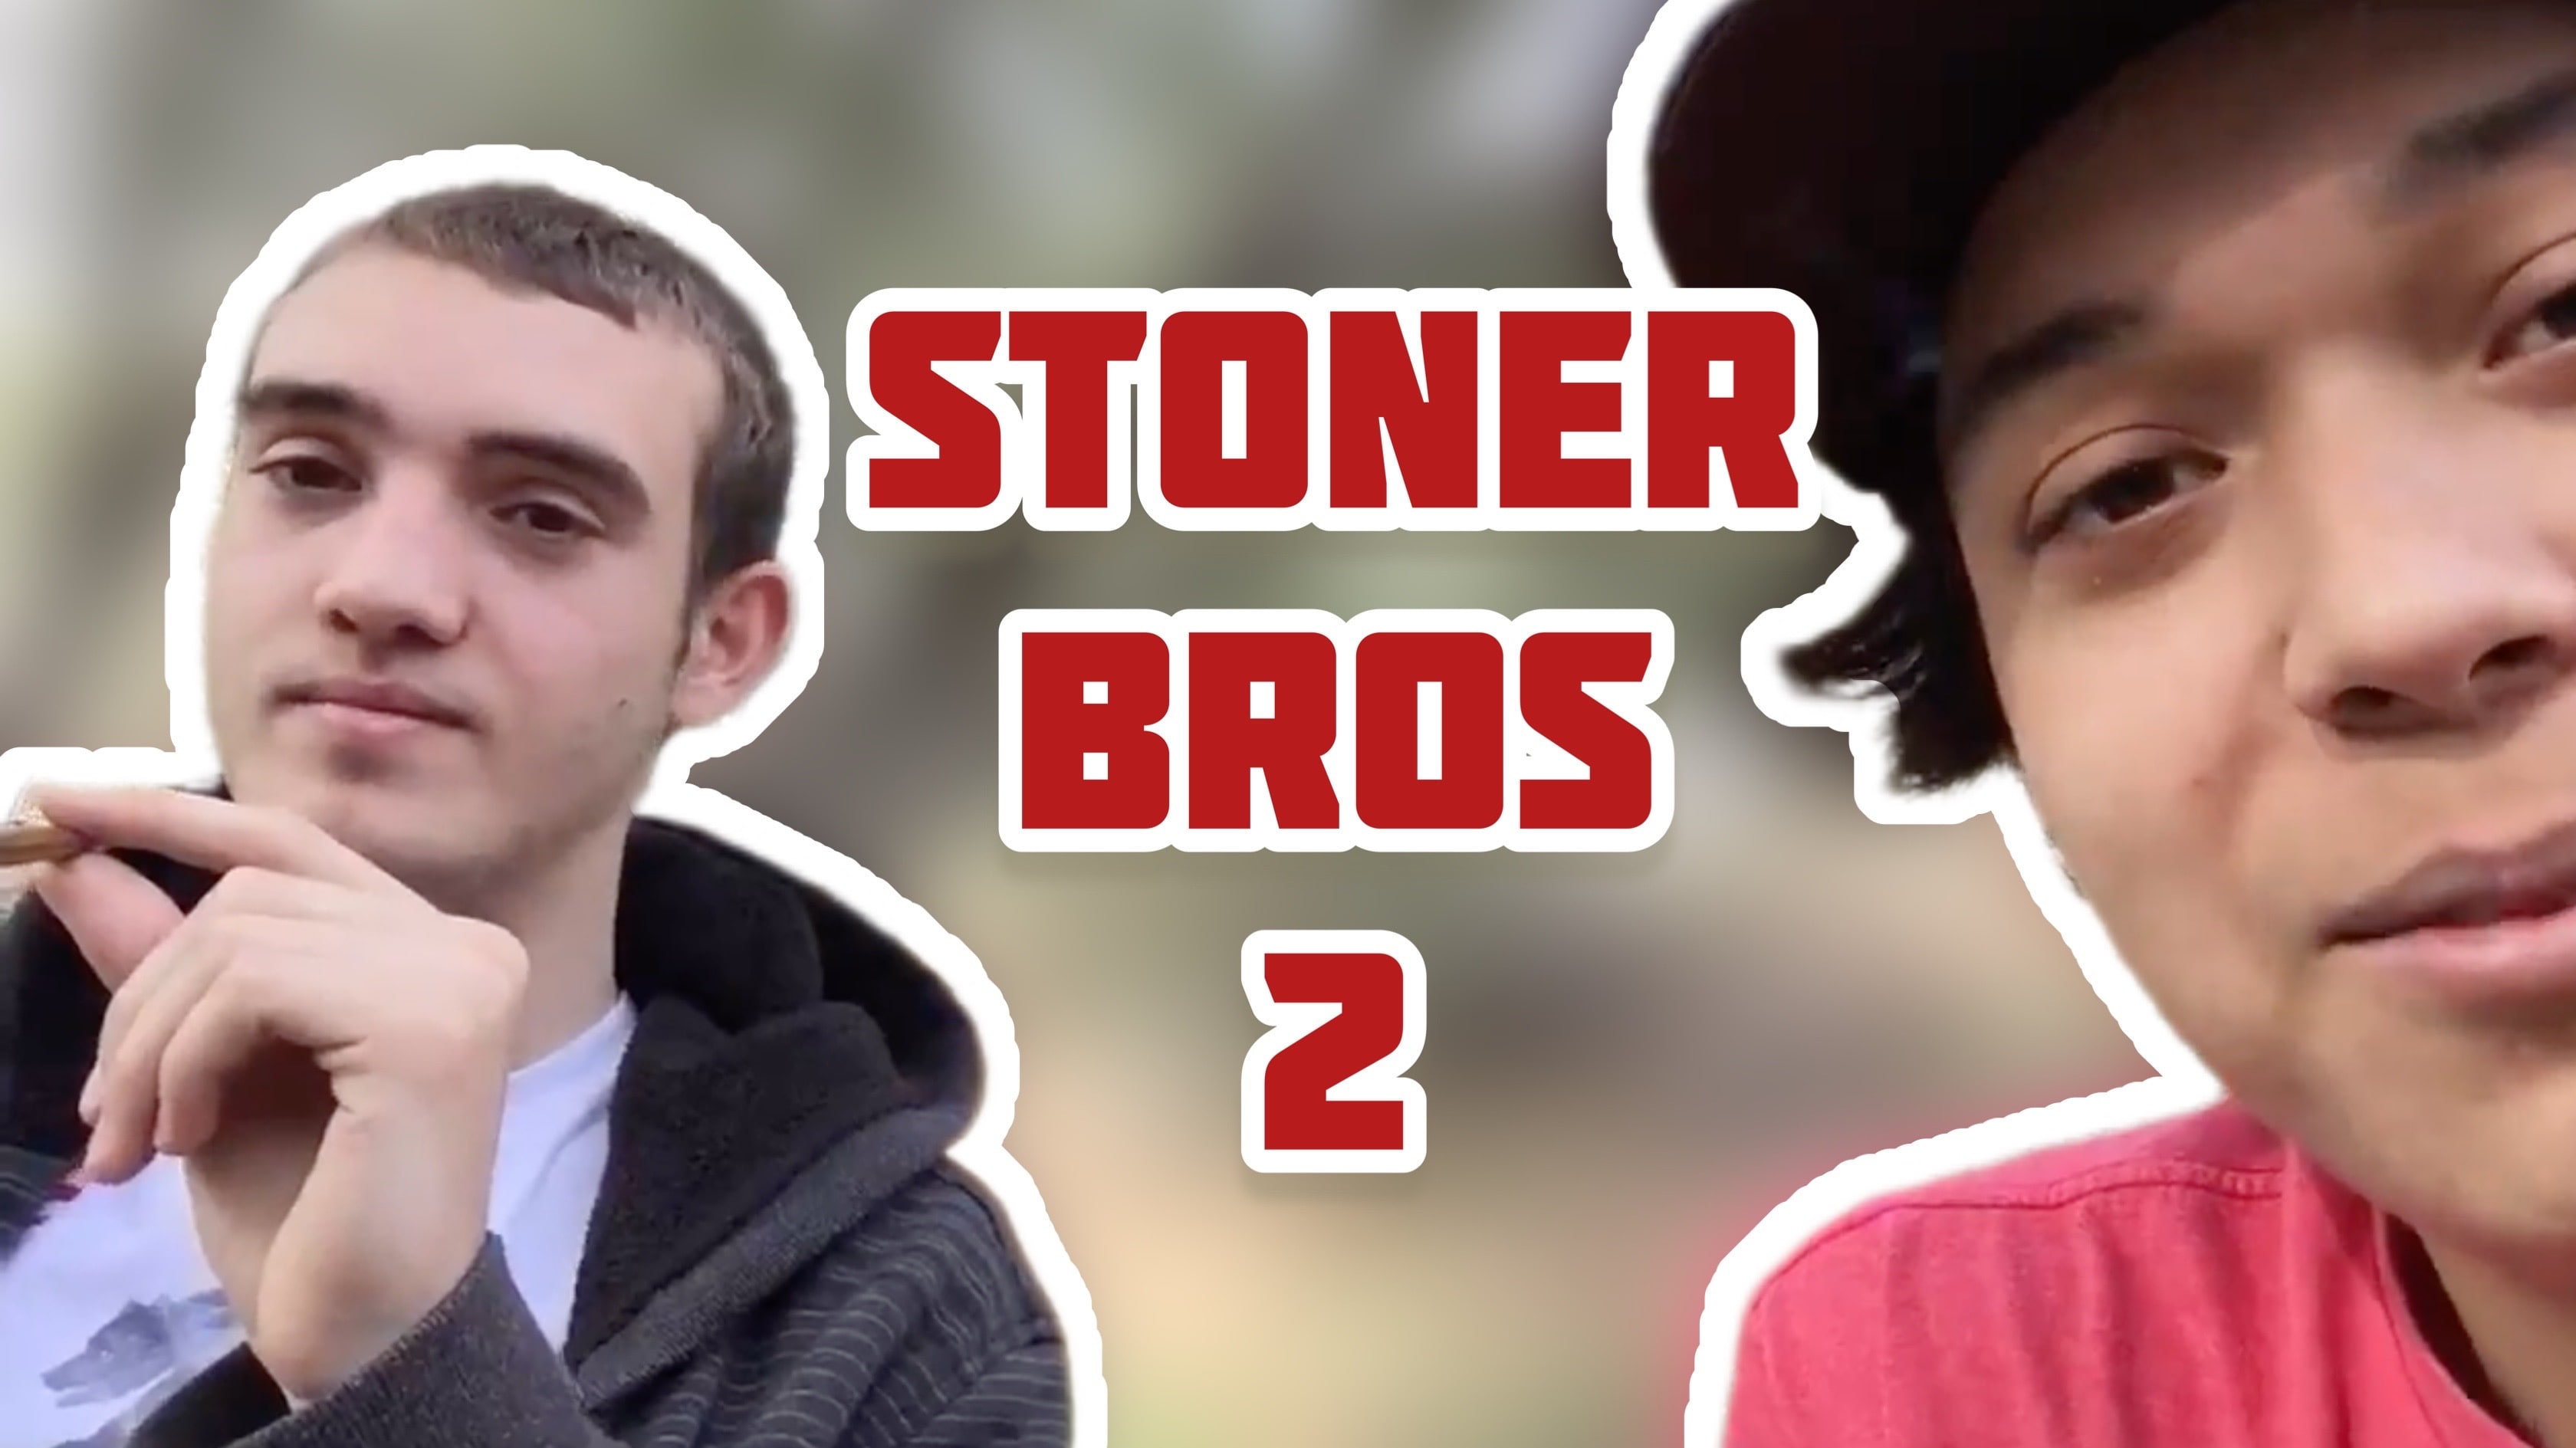 Stoner Bros 2 (teaser)